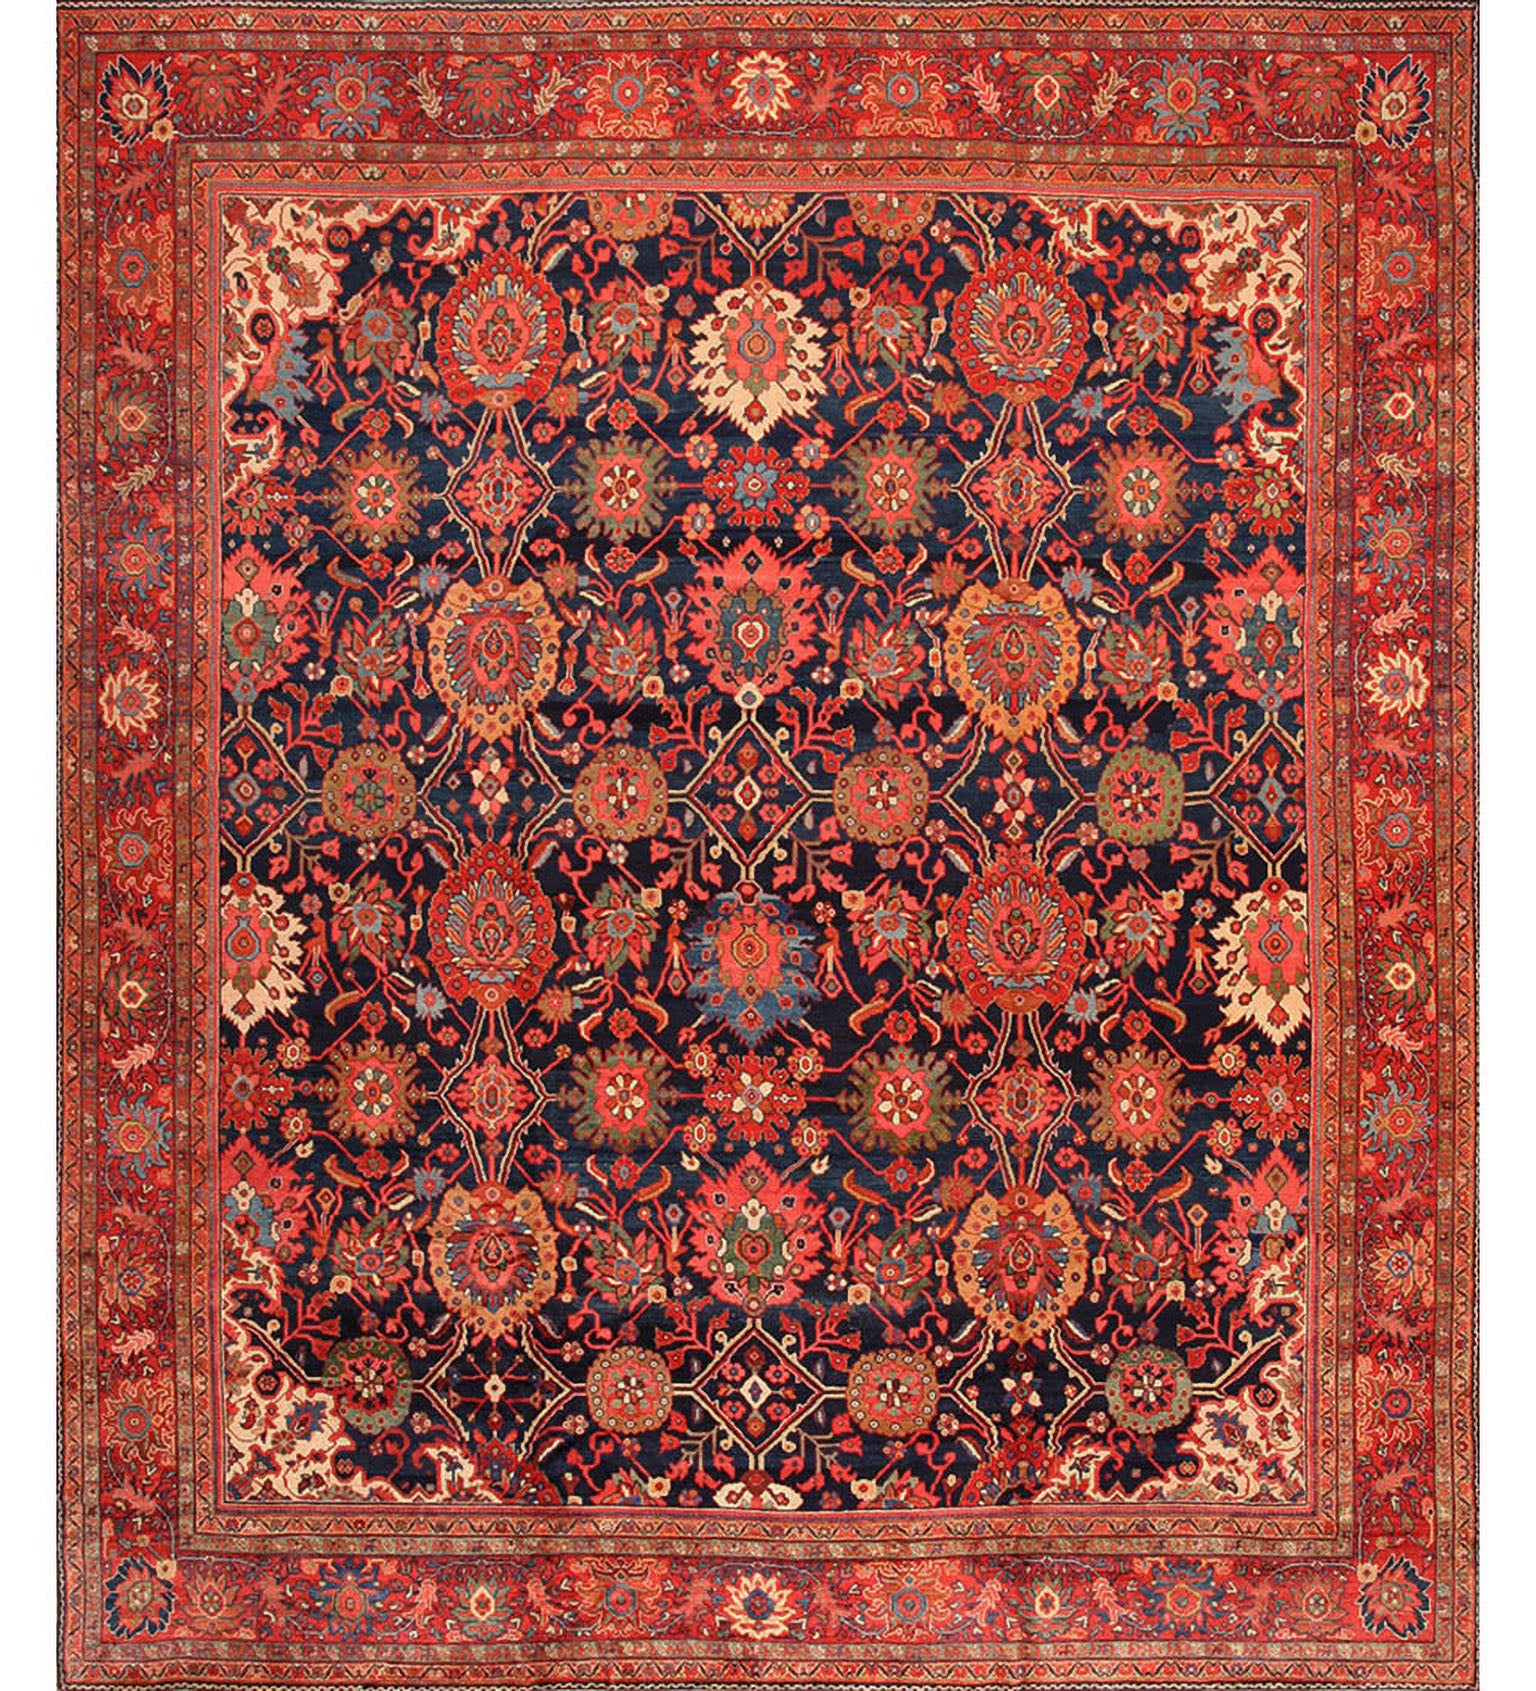 Persischer Ziegler Sultanabad-Teppich des 19. Jahrhunderts ( 11'6" x 13'8" - 351 x 417")